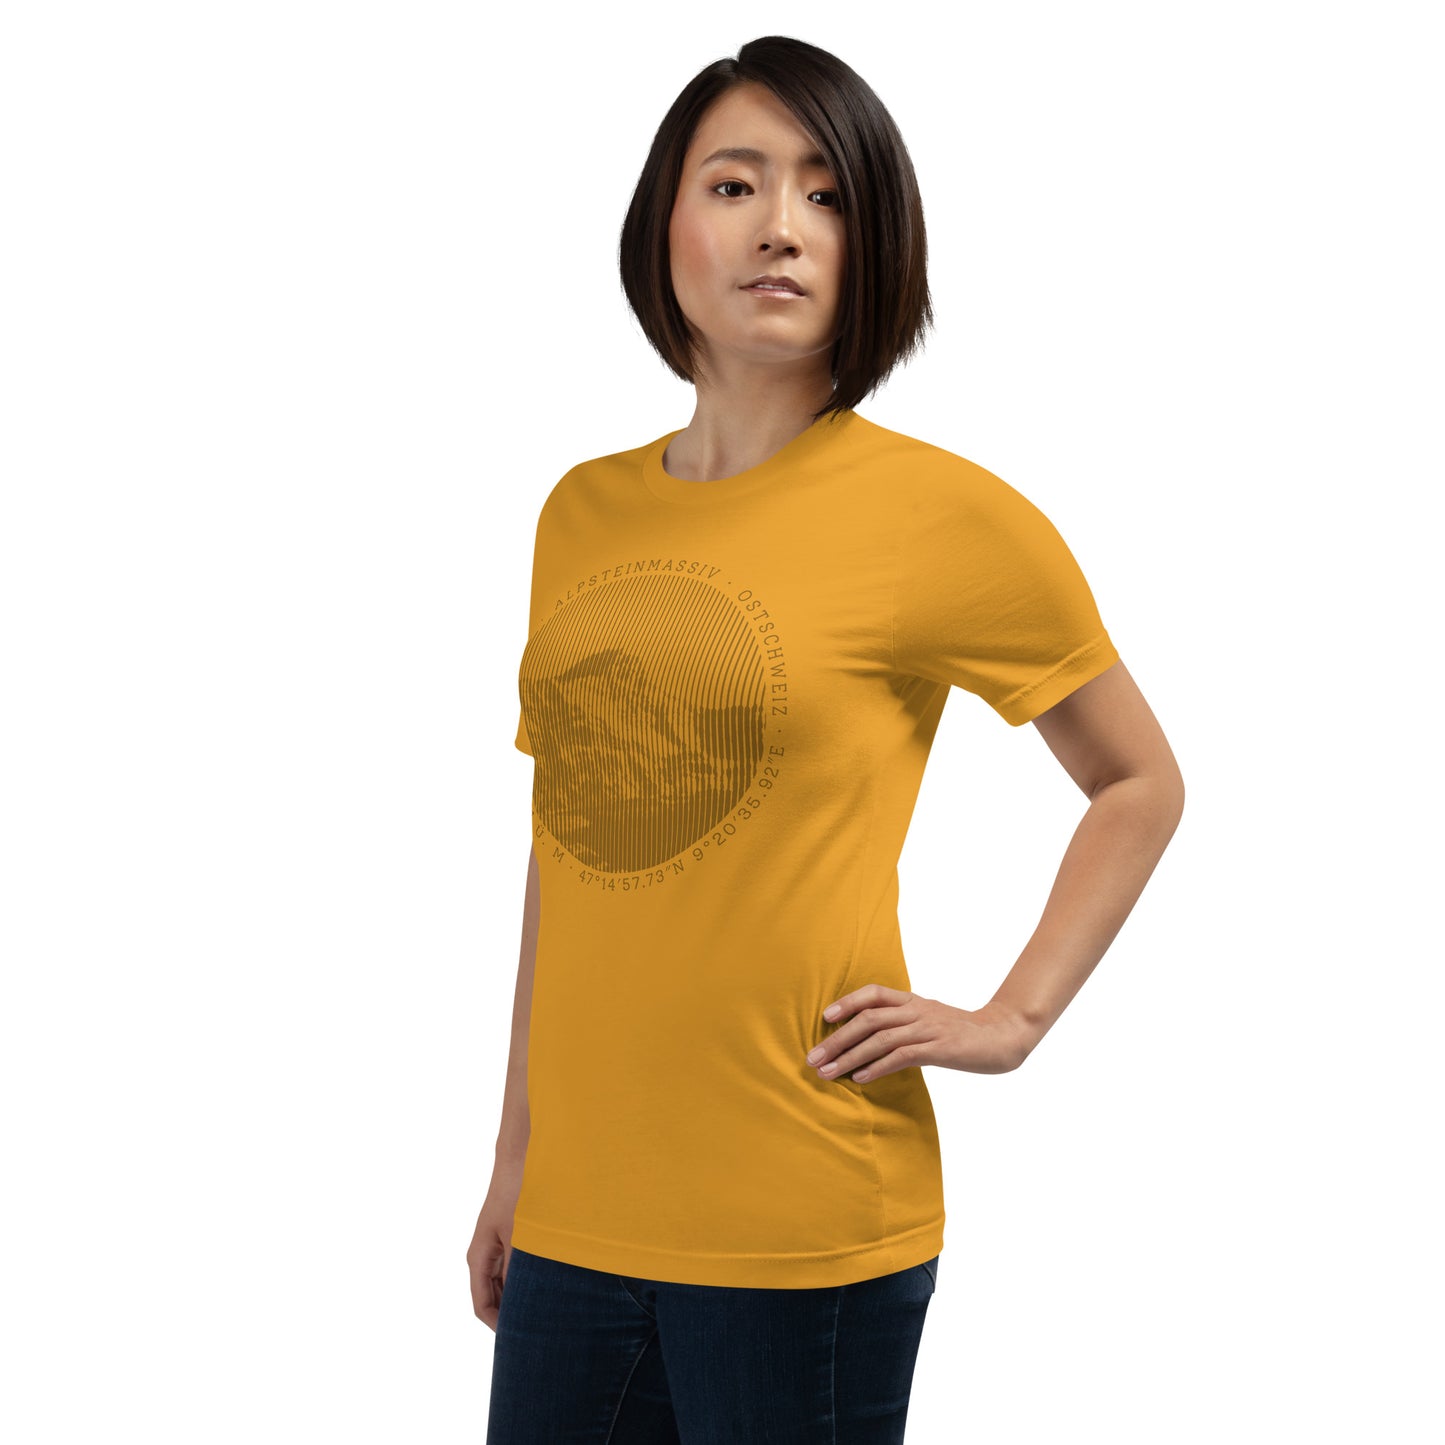 Diese Naturfreundin trägt ein senffarbenes Damen T-Shirt von Vallada mit einem Aufdruck des Säntis-Gipfels. Dieses T-Shirt ist ein Ausdruck ihres Enthusiasmus für die Region des Alpsteins.